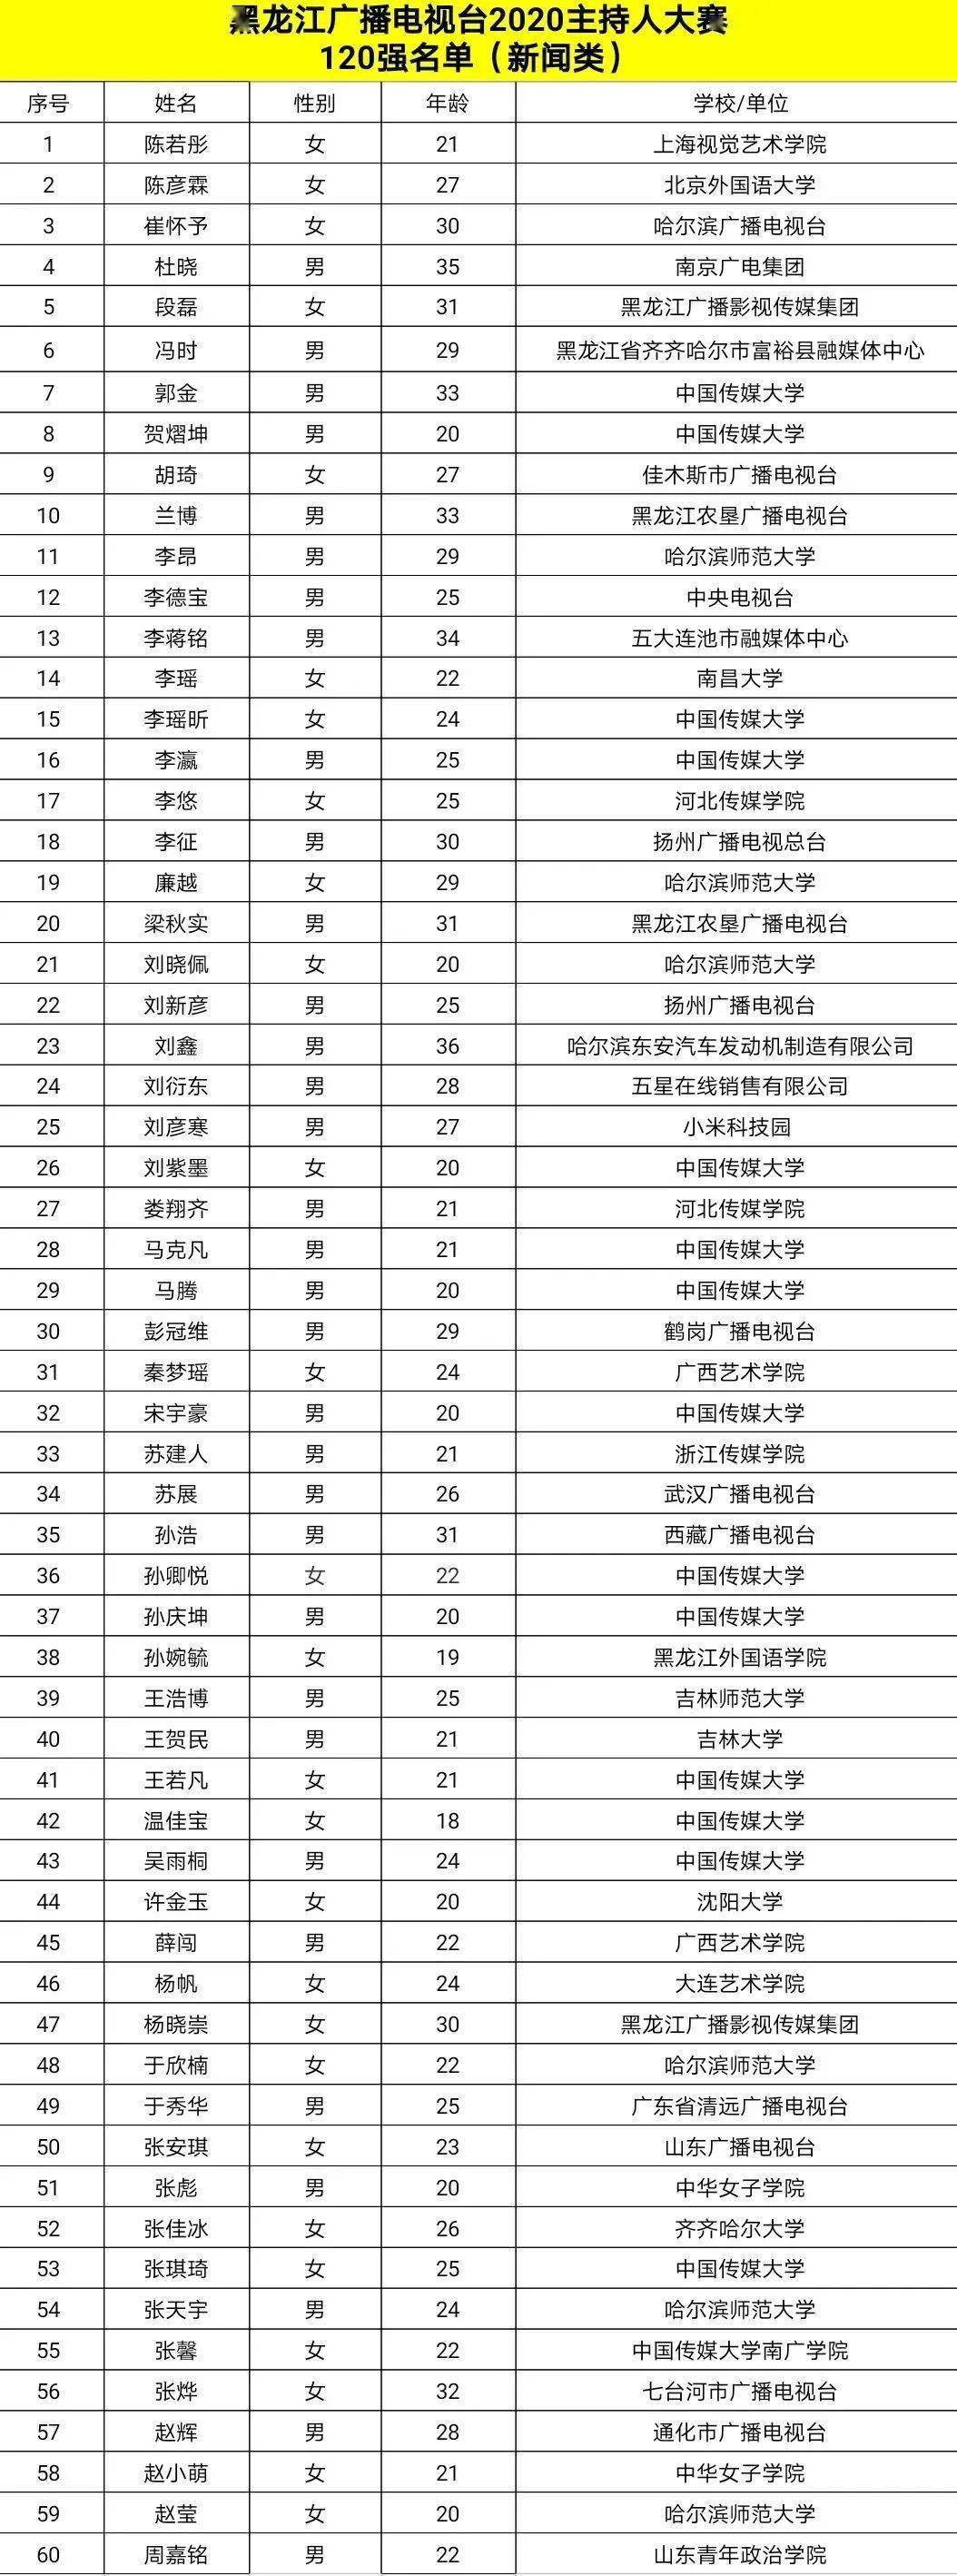 67黑龙江广播电视台2020主持人大赛120强名单公布!